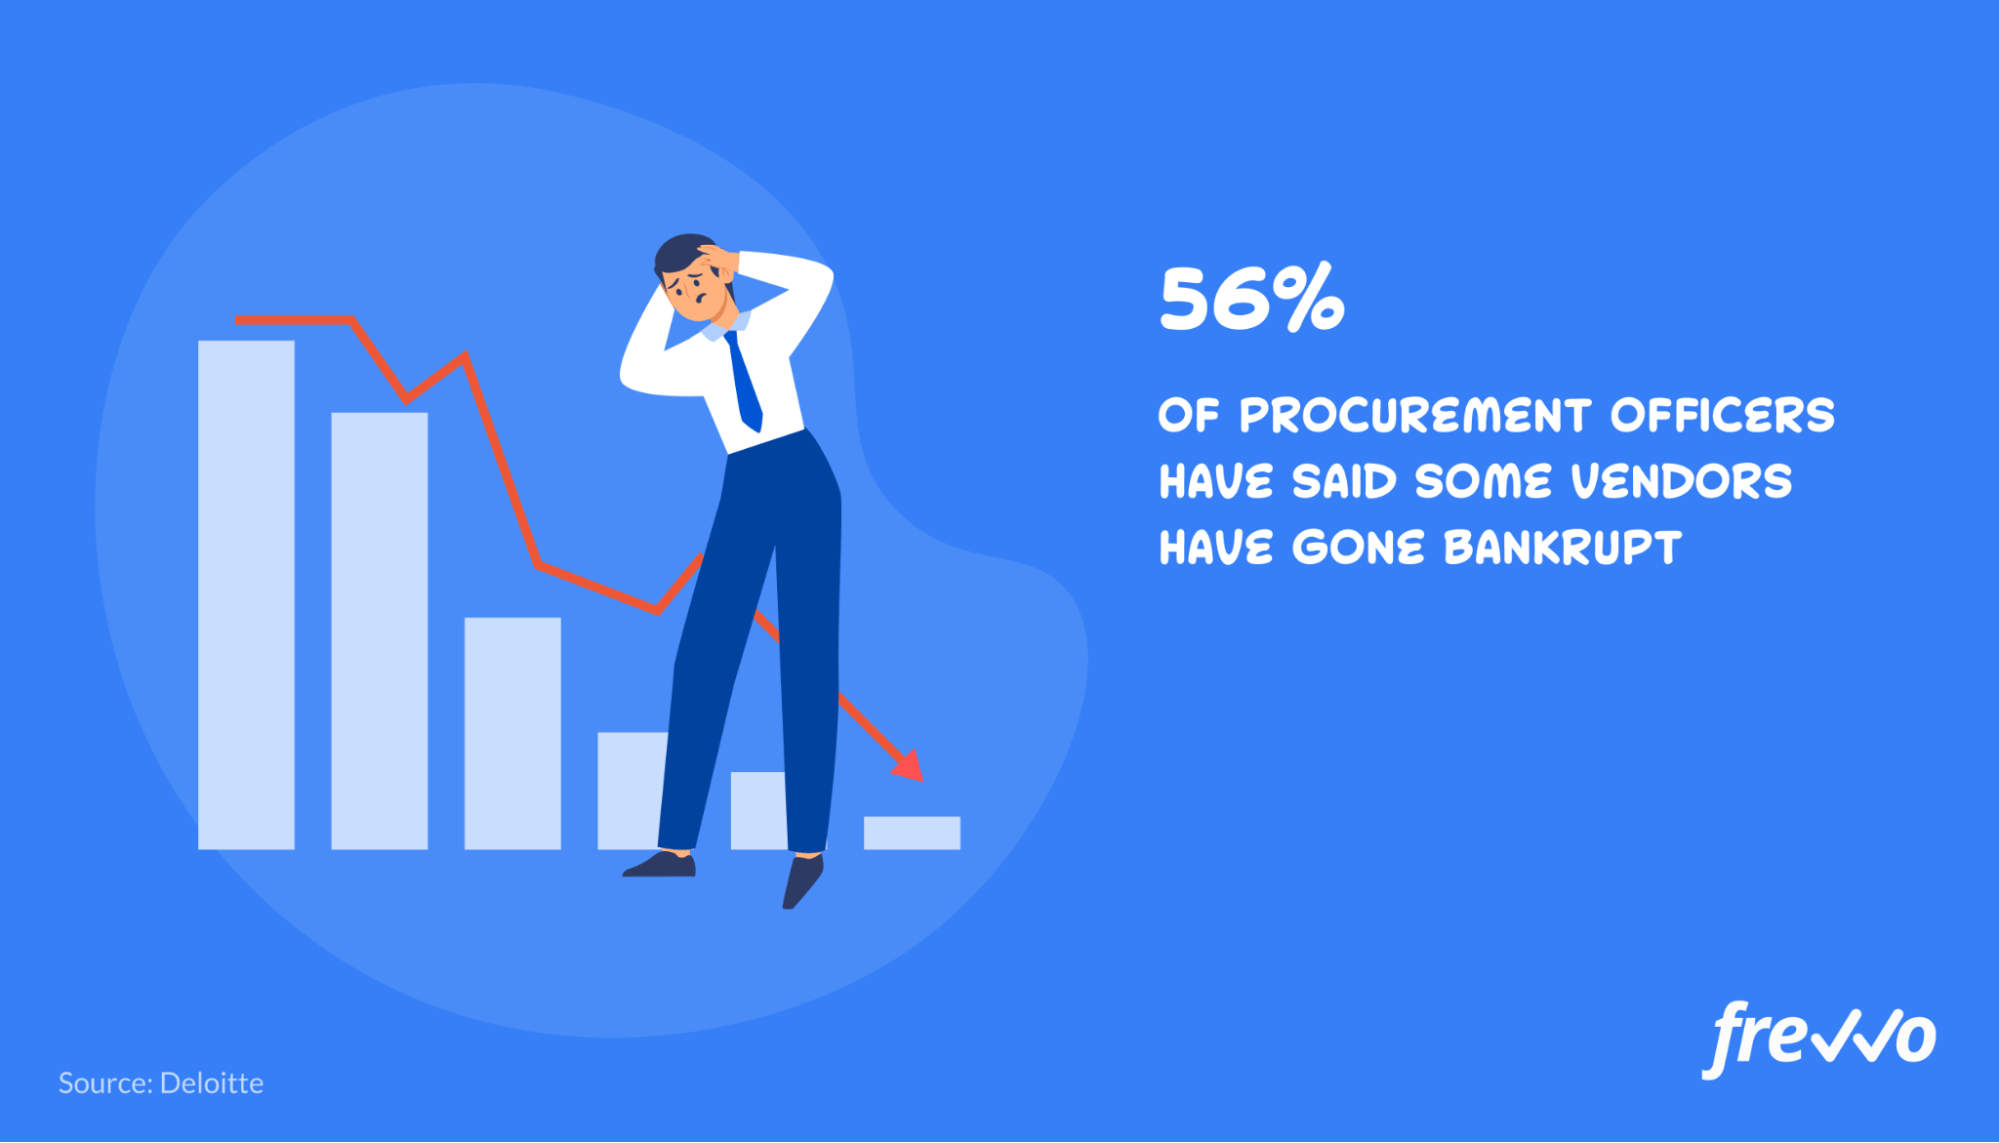 56% of procurement officers have said some vendors have gone bankrupt